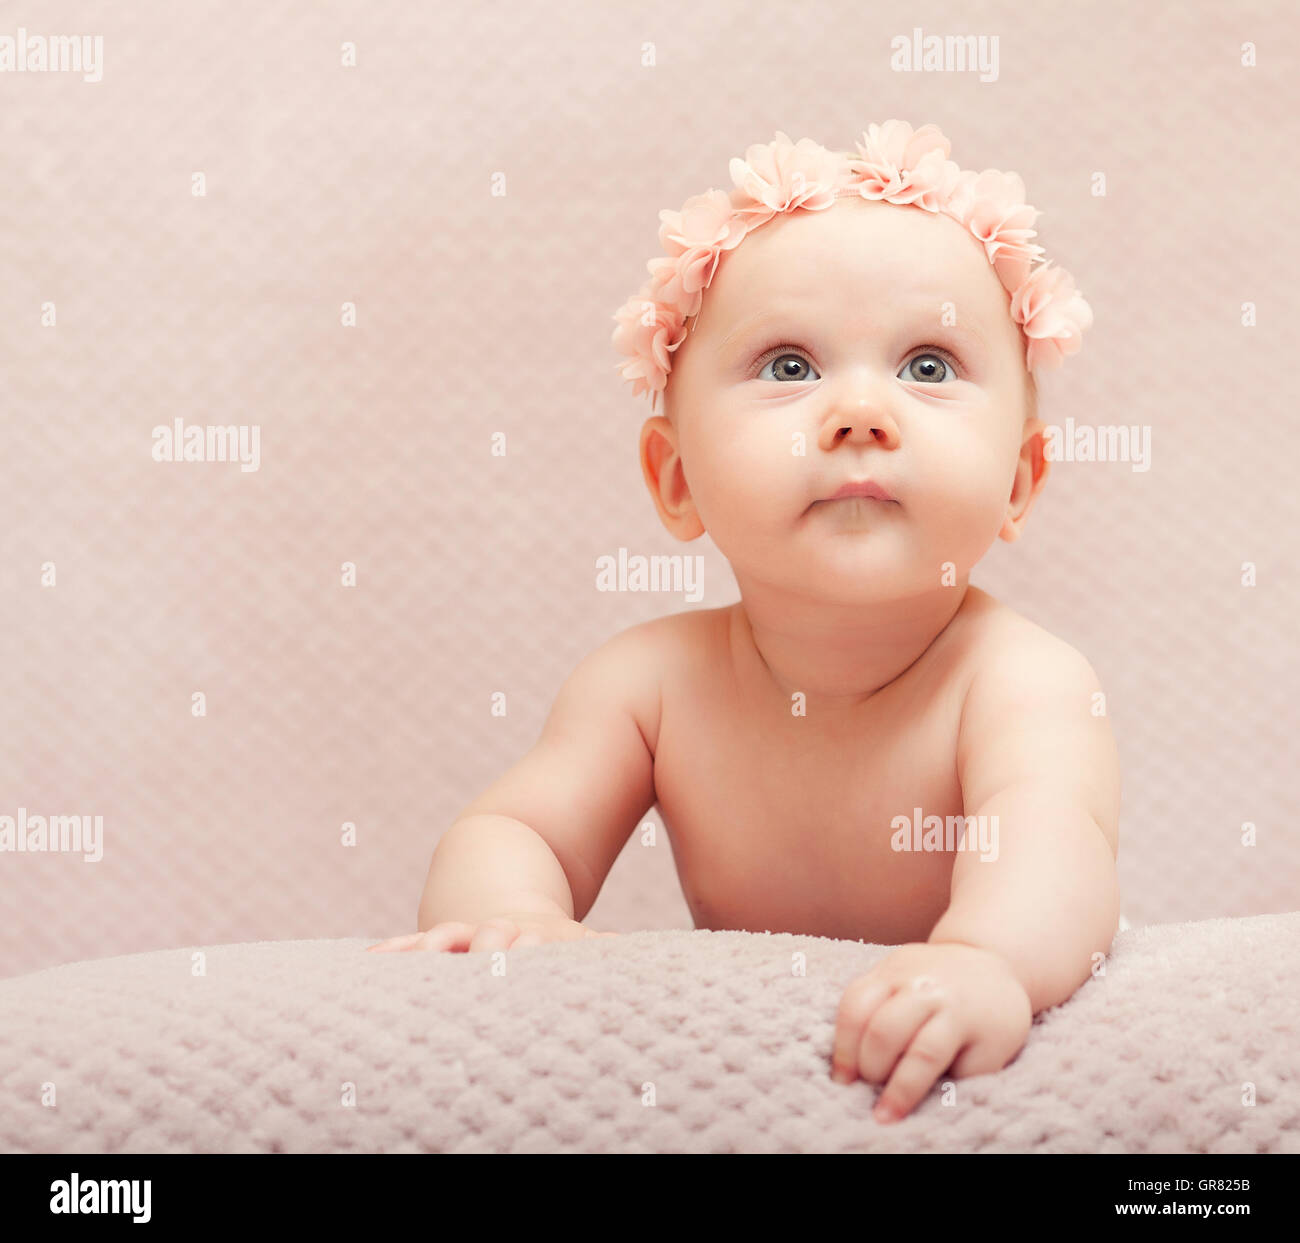 Ritratto neonato flower pink carino bambino kid adorabili poco femmina cappello di lana fine-art baby costume femminile innocenza infantile ca Foto Stock